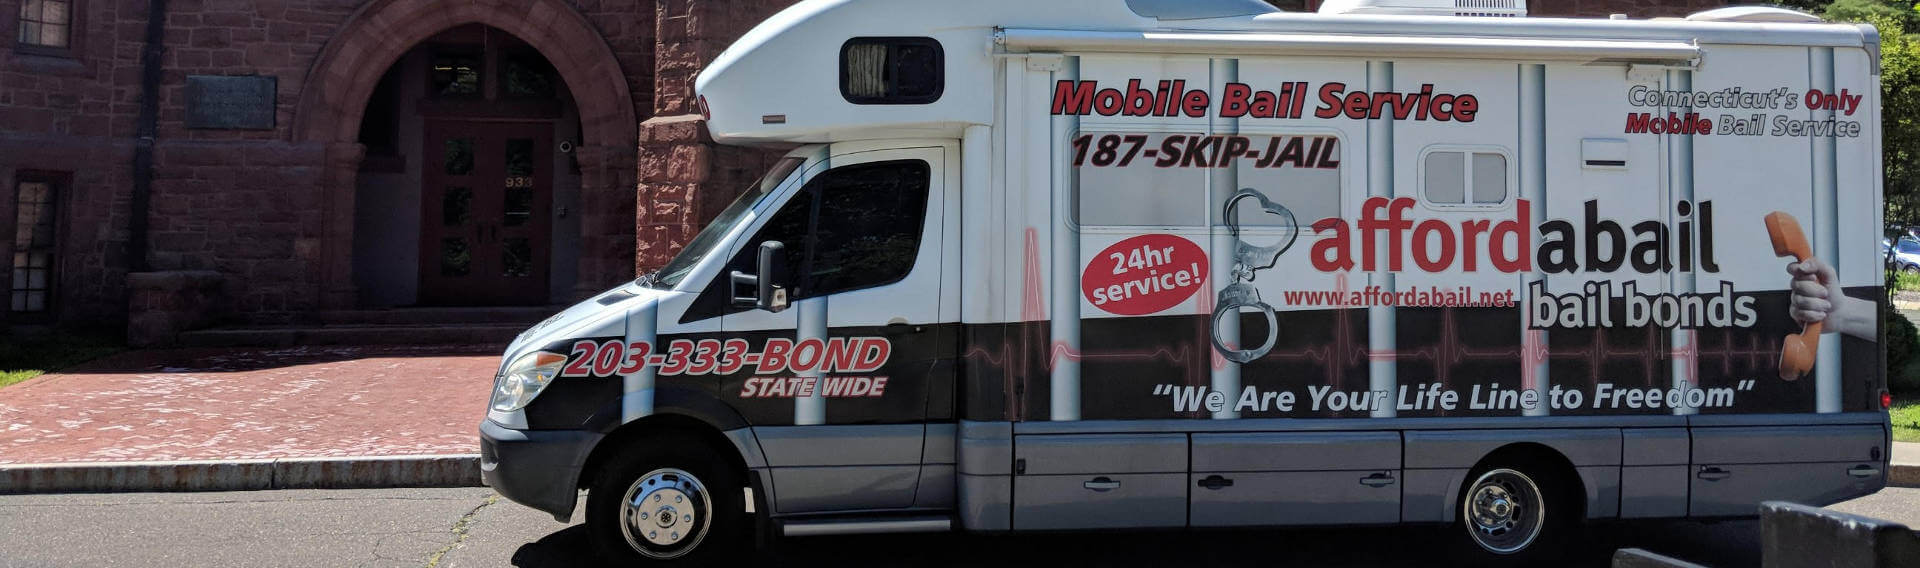 Mobile bail bonds service in Branford CT